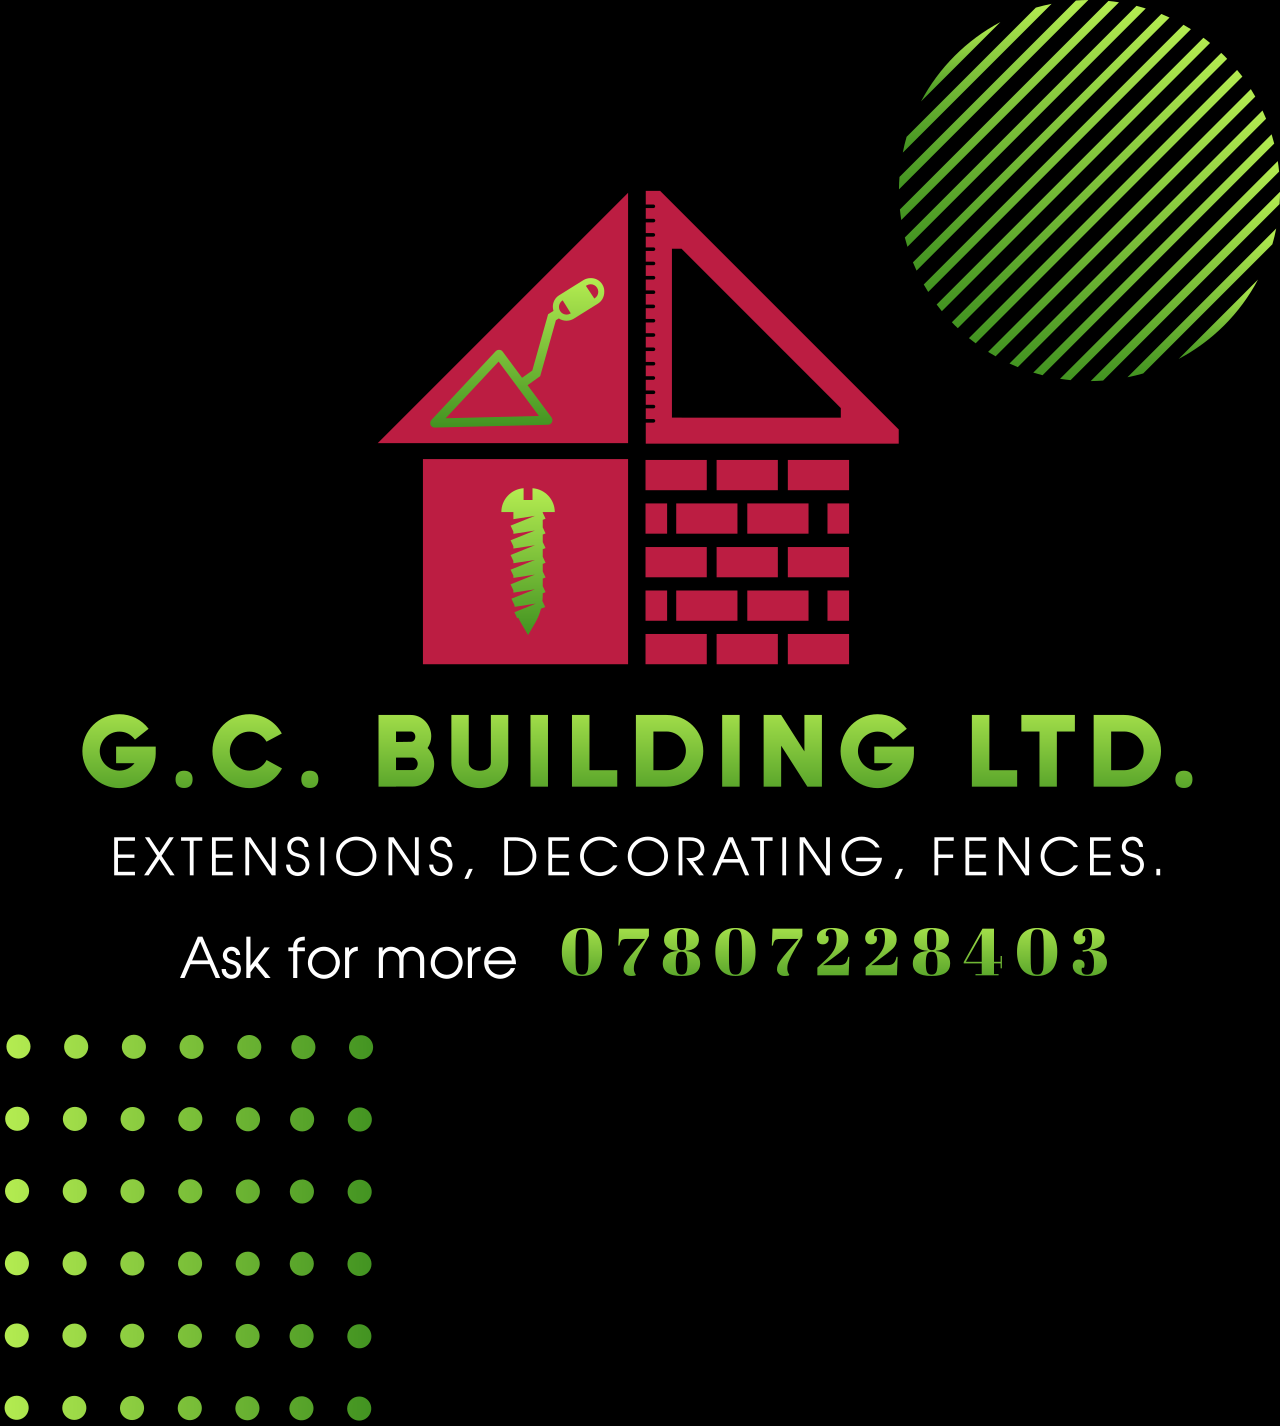 G.C. building Ltd.'s web page